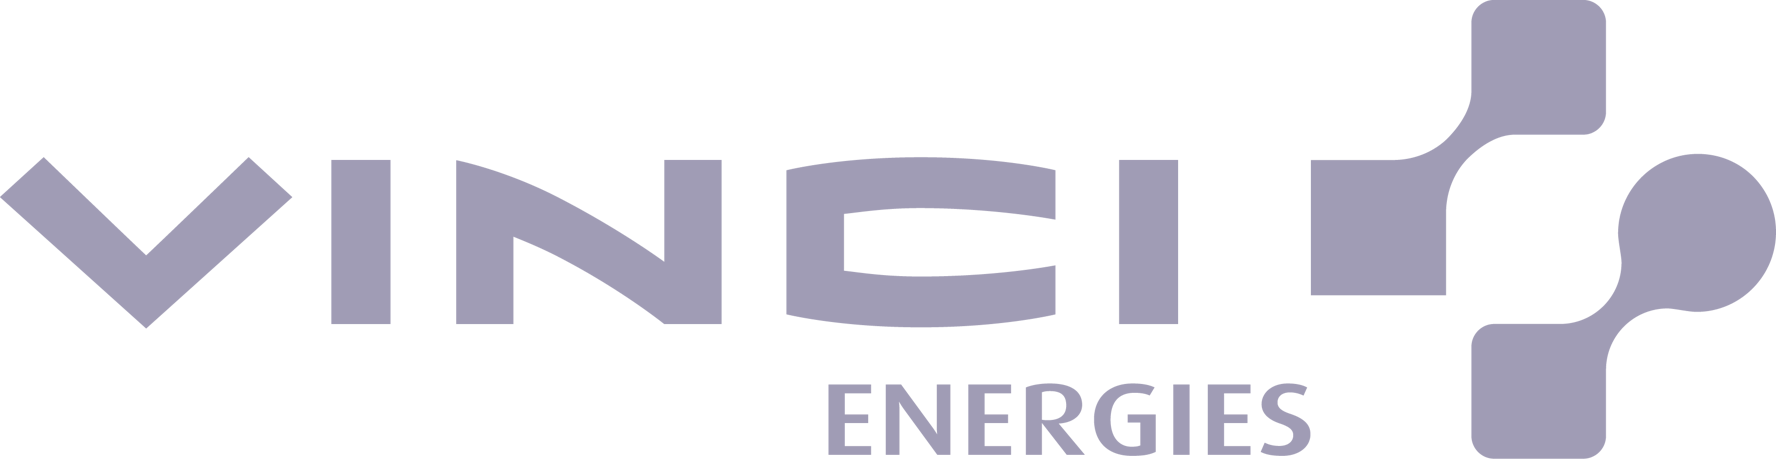 logo vinci energies client united heroes